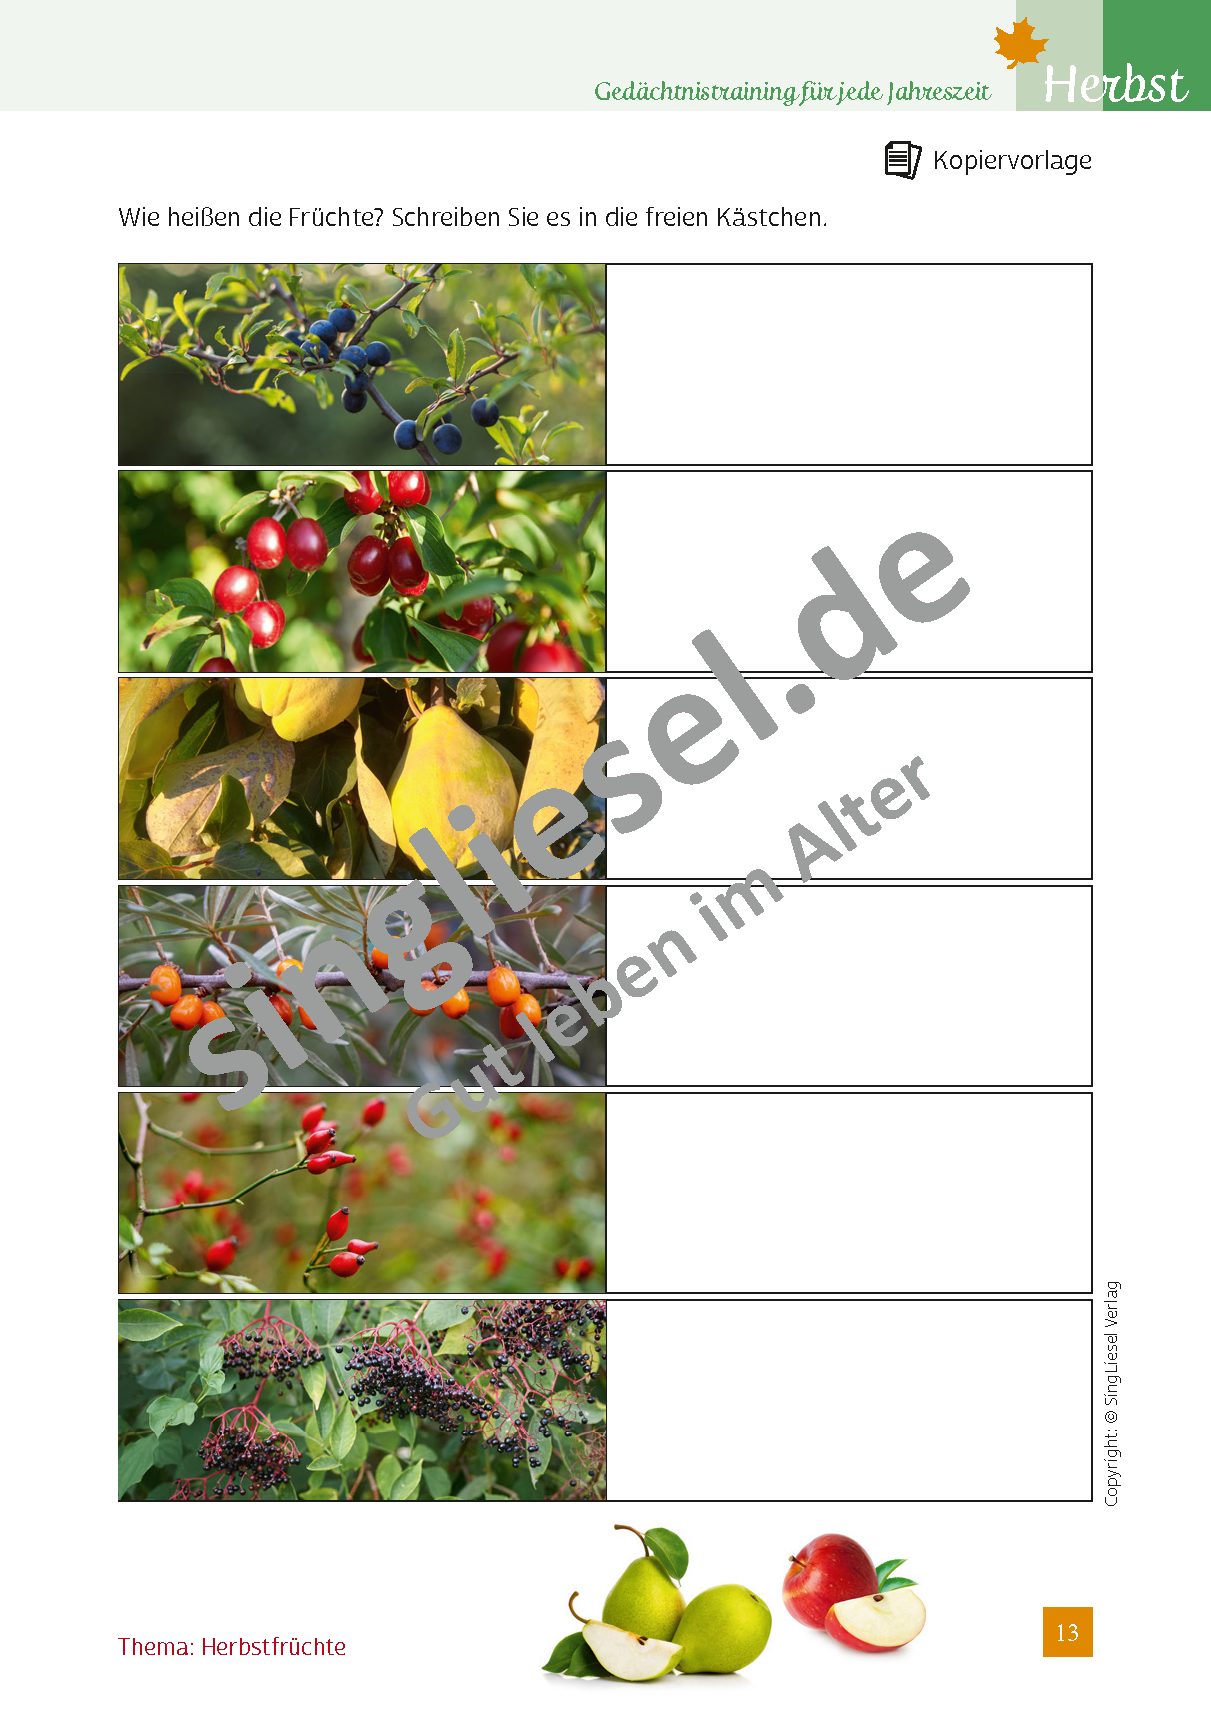 Herbstfrüchte - Gedächtnistraining für jede Jahreszeit (Sofort-Download als PDF)